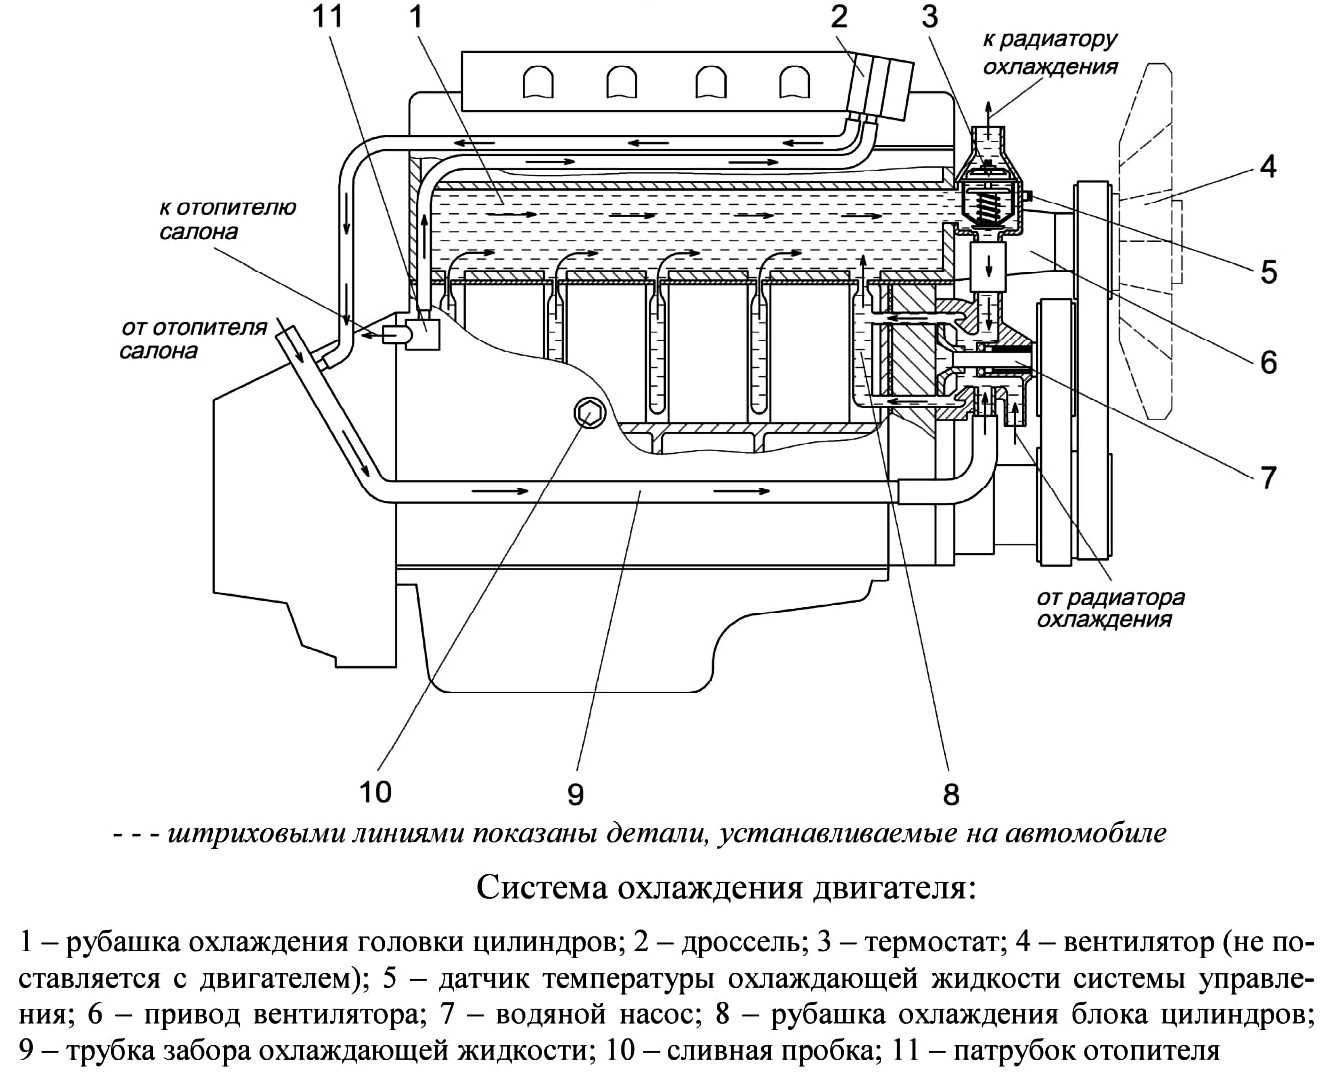 Схема суд автомобиля газель с двигателем змз-40524